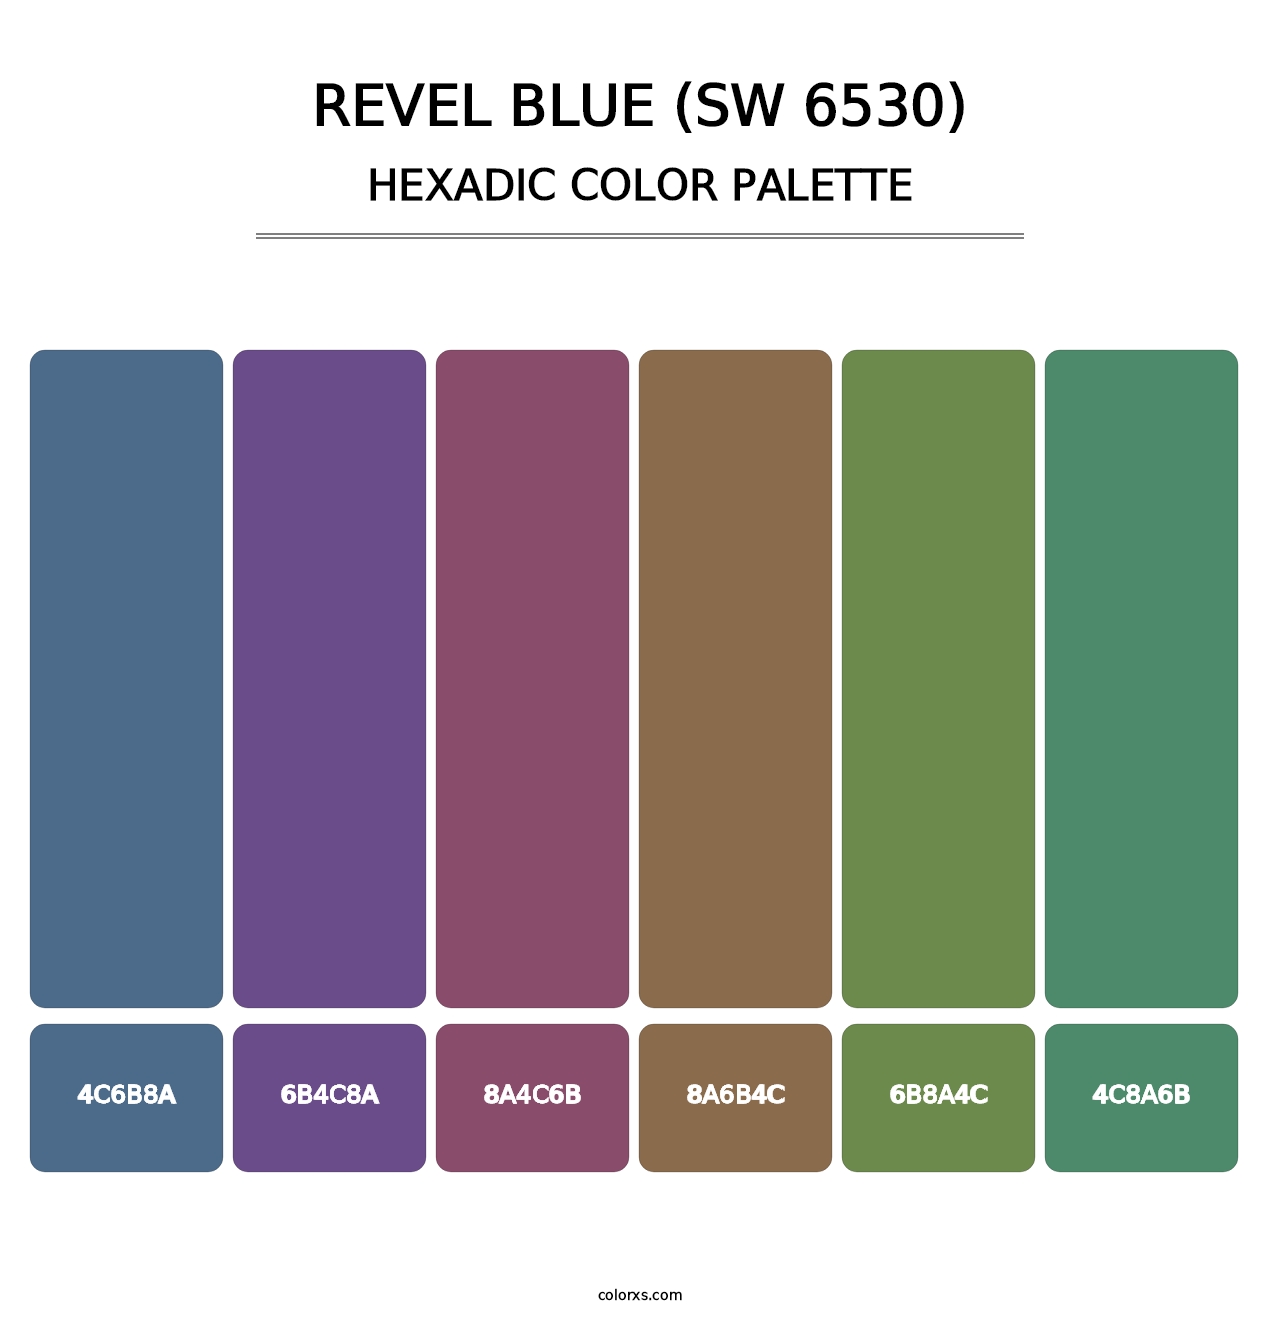 Revel Blue (SW 6530) - Hexadic Color Palette